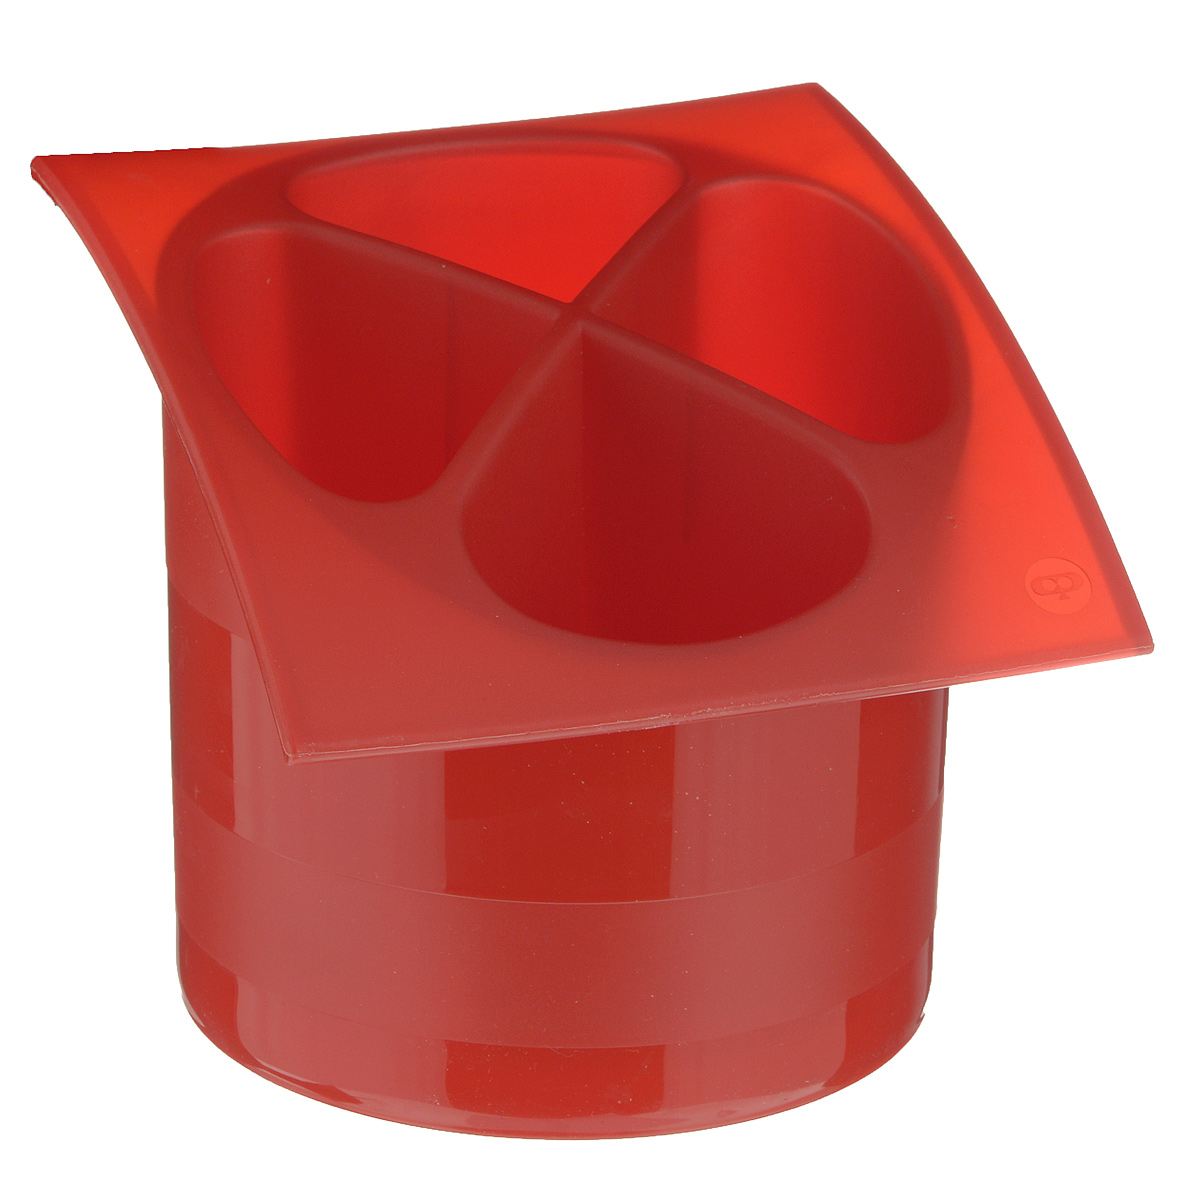 фото Подставка для столовых приборов "Cosmoplast", цвет: красный, диаметр 14 см